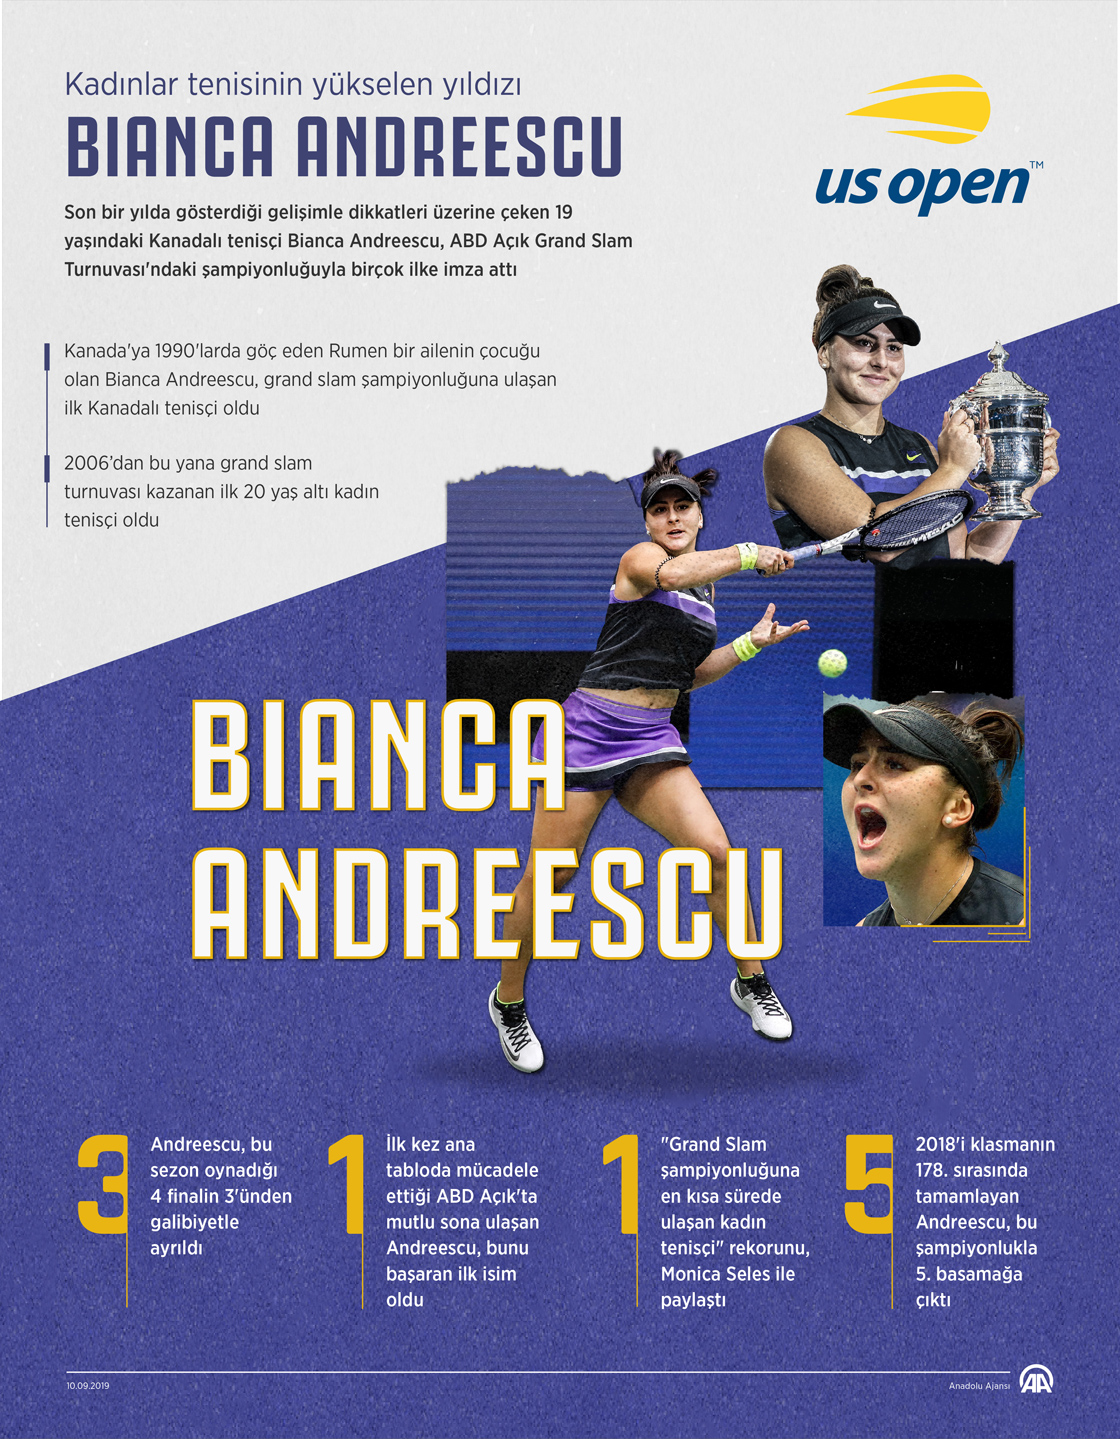 Kadınlar tenisinin yükselen yıldızı Andreescu